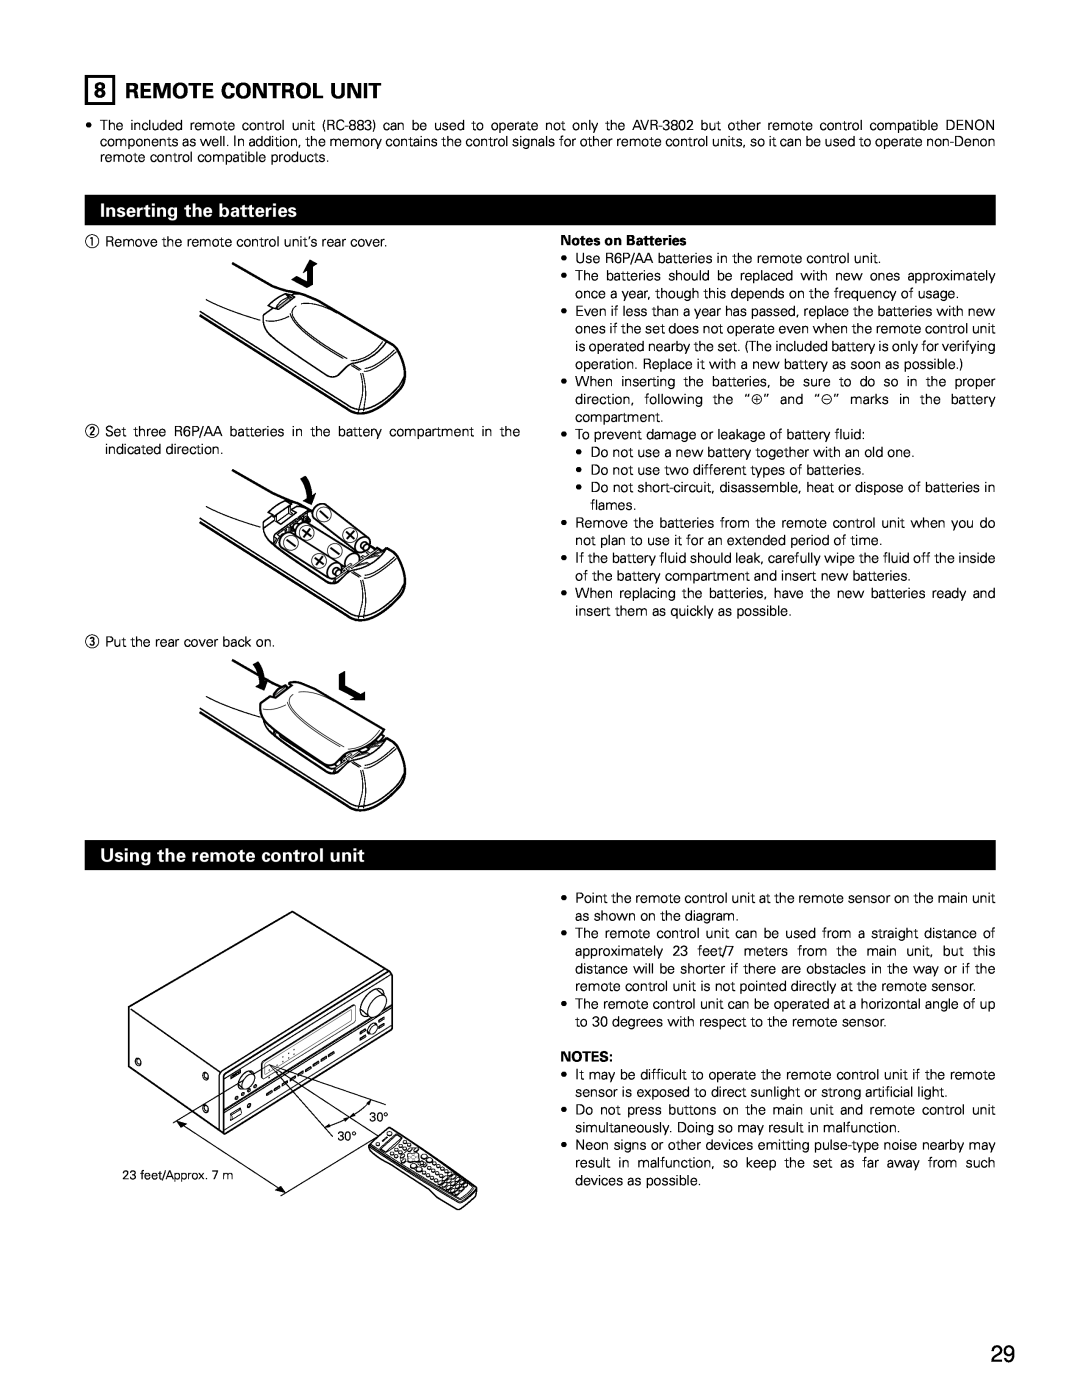 Denon AVR-3802 manual 8REMOTE CONTROL UNIT, Inserting the batteries, Using the remote control unit 